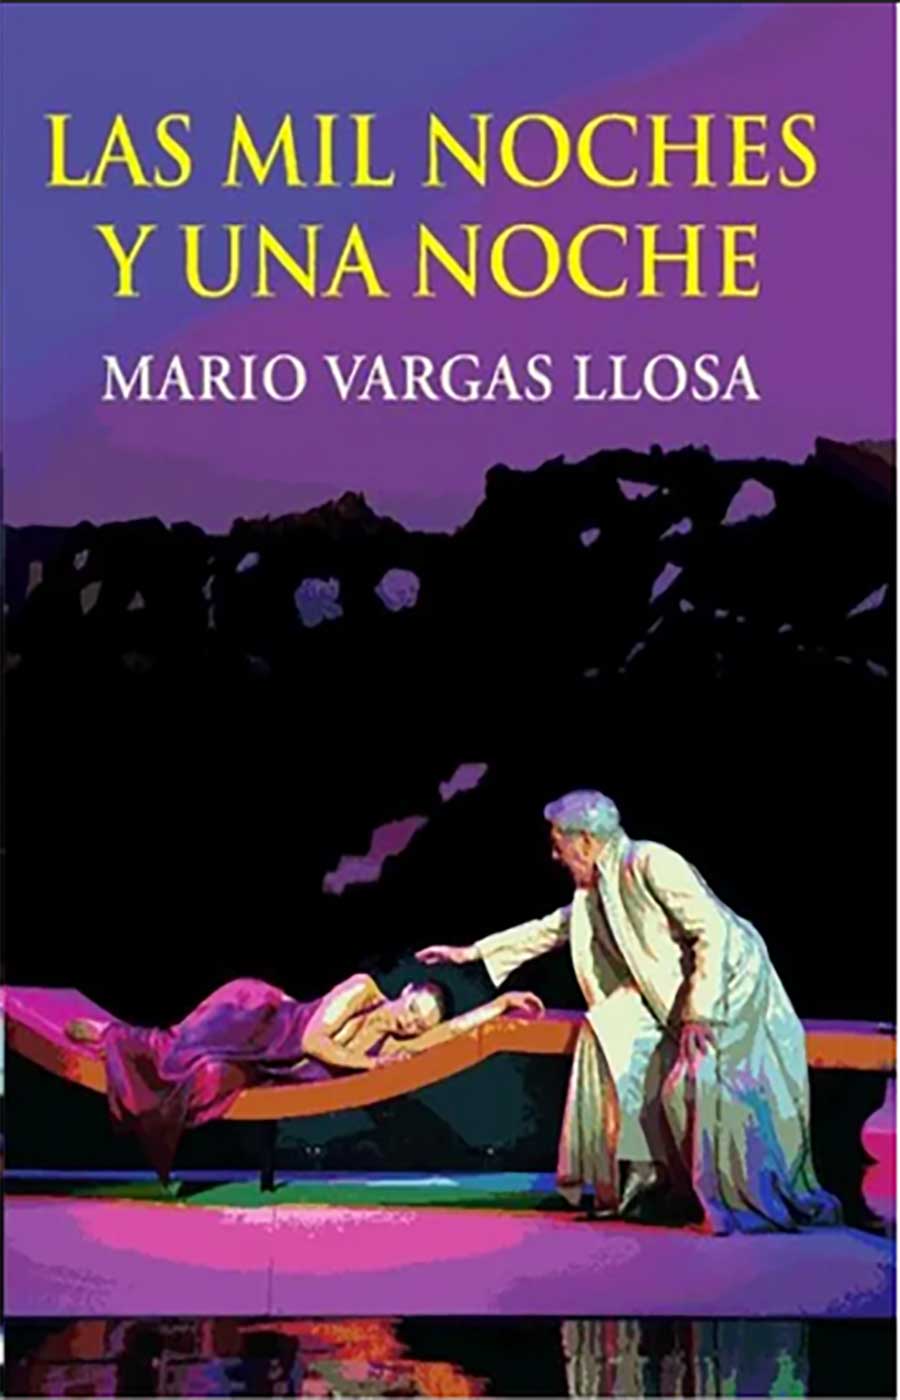 Las mil noches y una noche, obra teatral del escritor Mario Vargas Llosa que está basada en la célebre recopilación de cuentos árabes del mismo nombre.